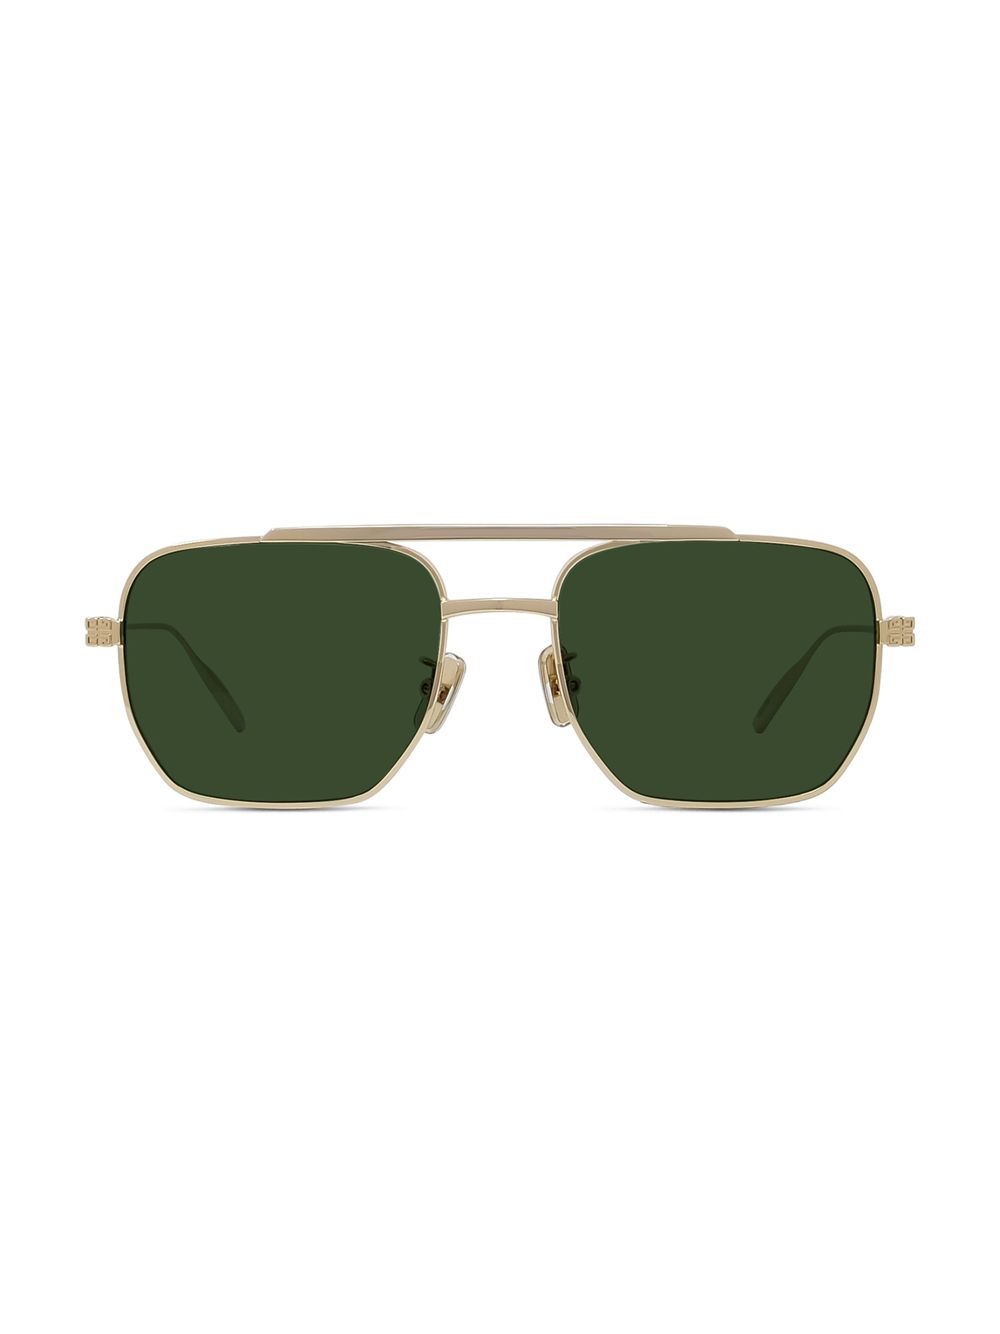 Солнцезащитные очки-авиаторы GV Speed 54MM Givenchy, золотой солнцезащитные очки givenchy коричневый золотой